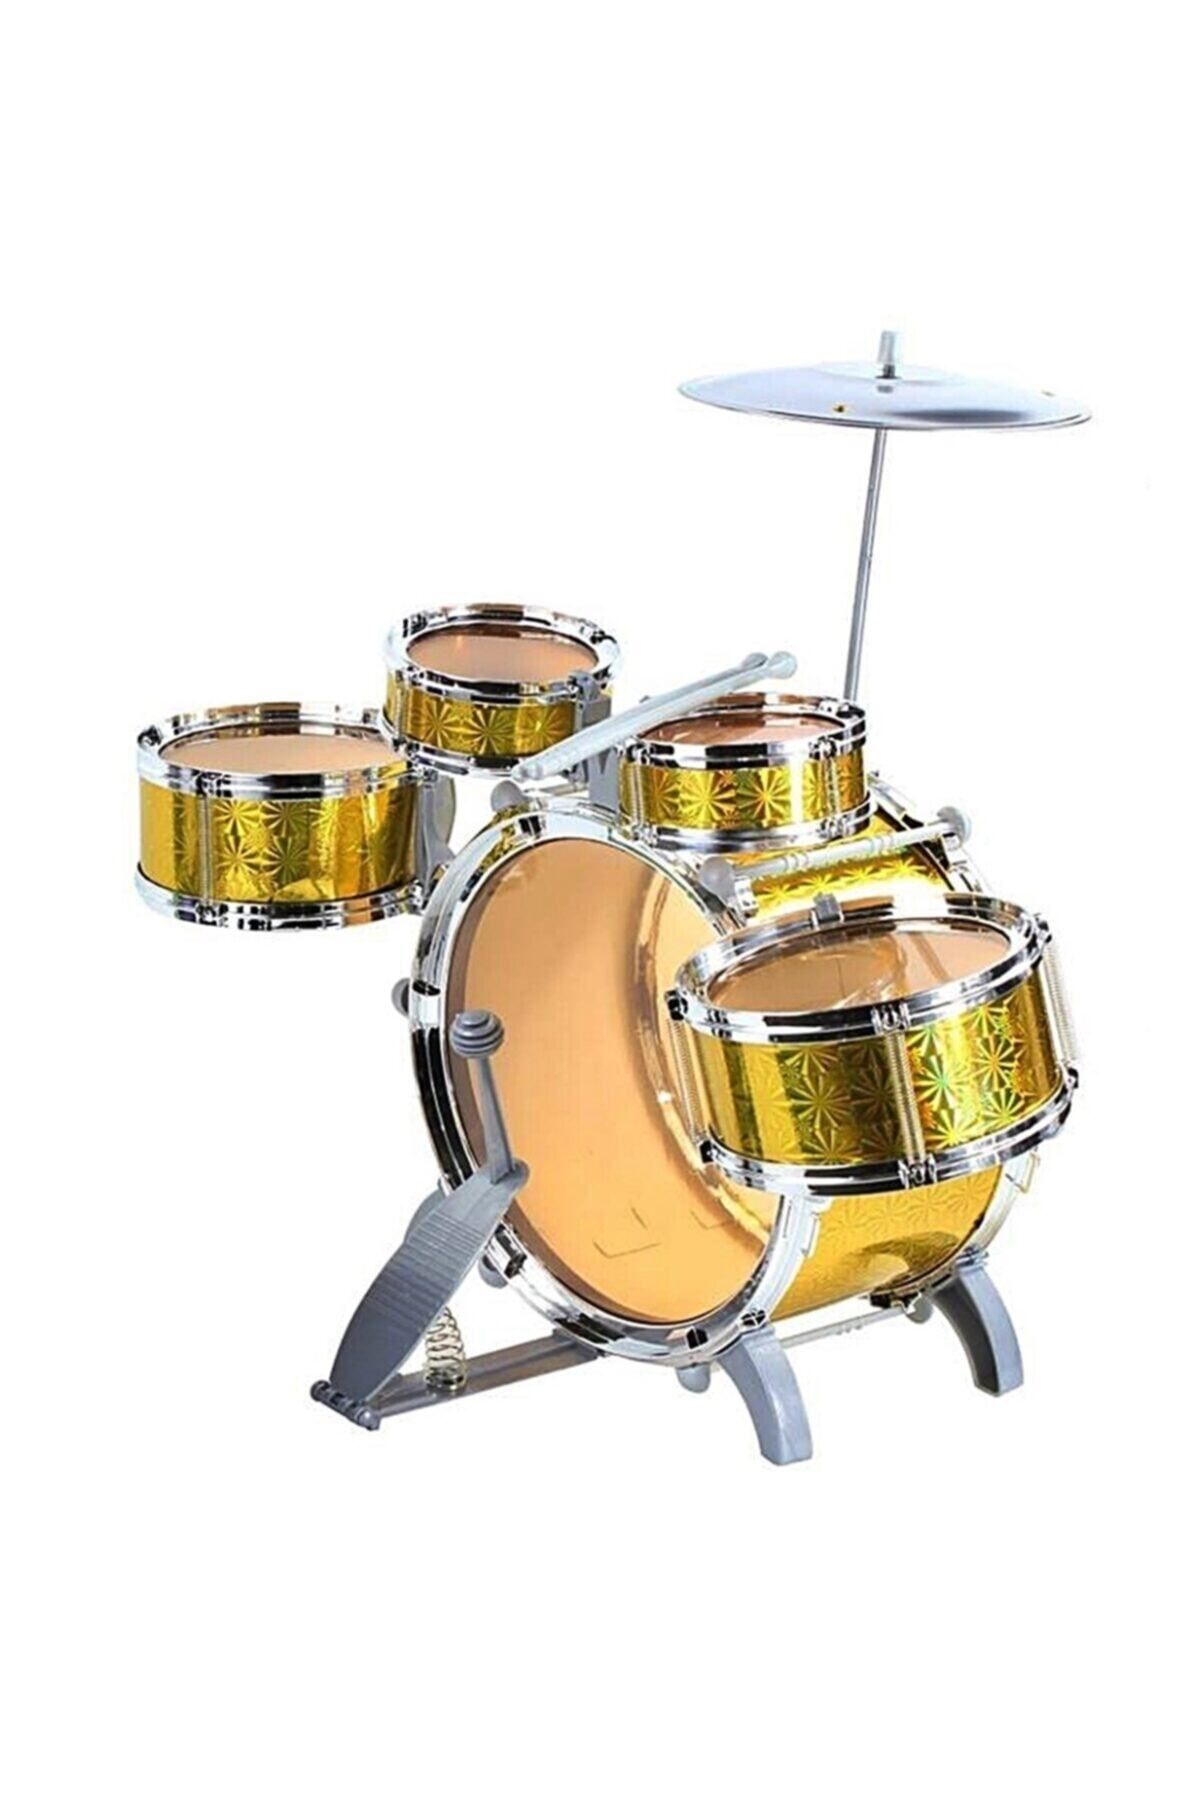 SAZE Jazz Drum Bateri Seti Minik müzisyenler için harika büyük davul seti sizlerle!